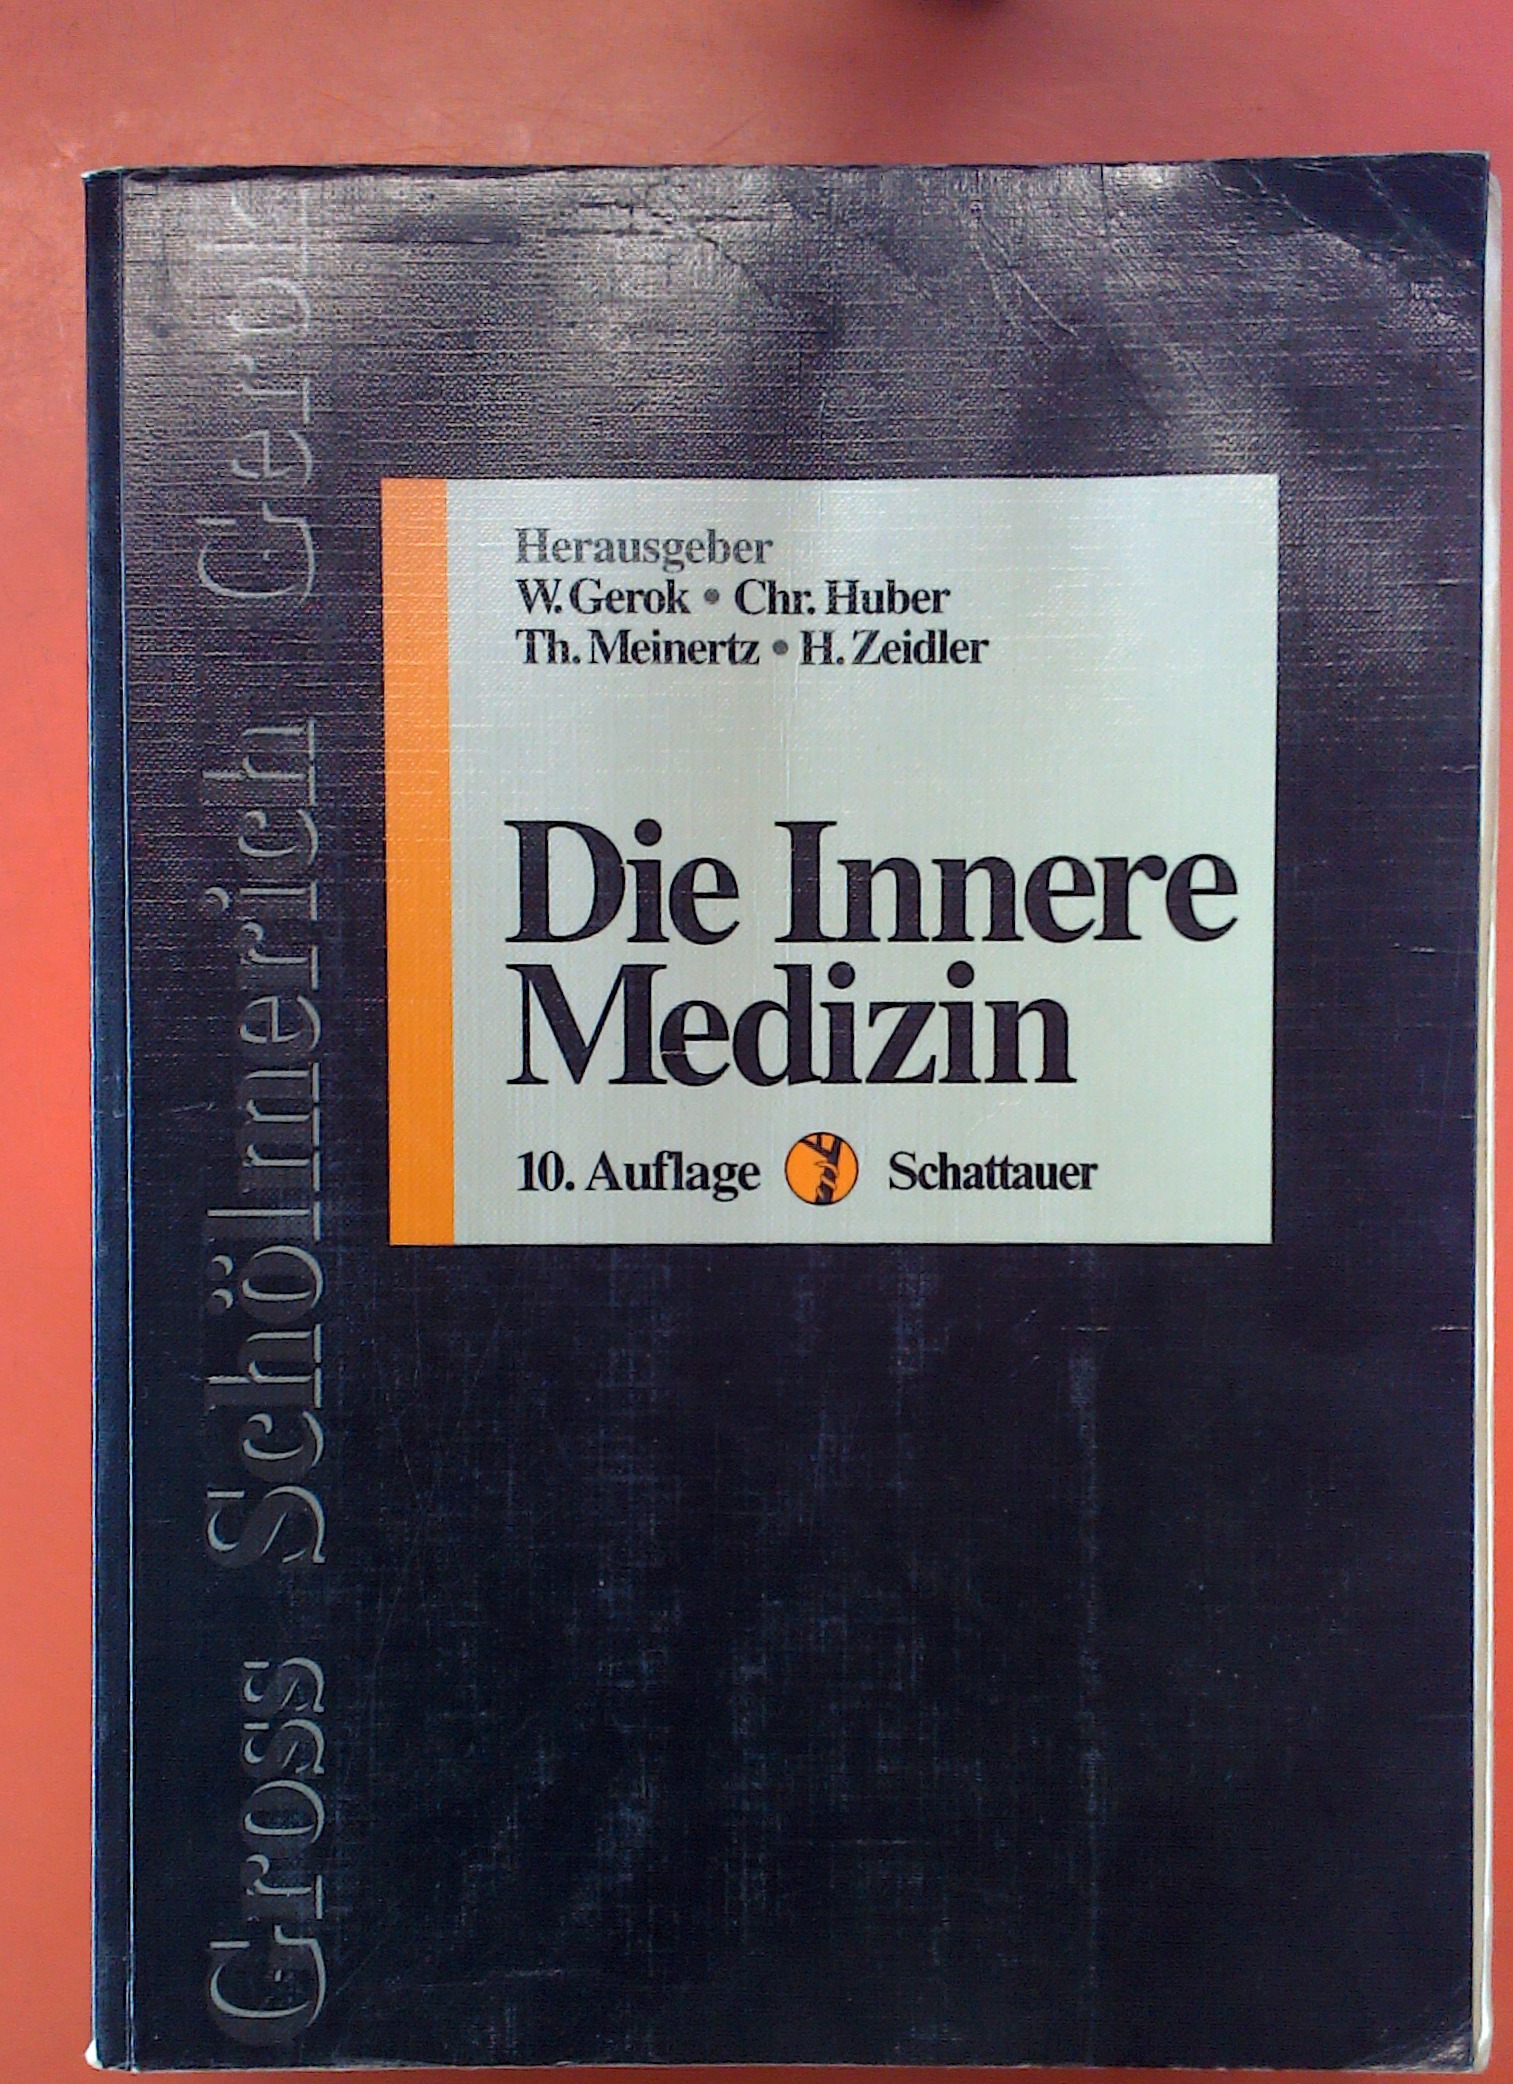 Die Innere Medizin, 10. Auflage - Gerok/Huber/Meinertz/Zeidler